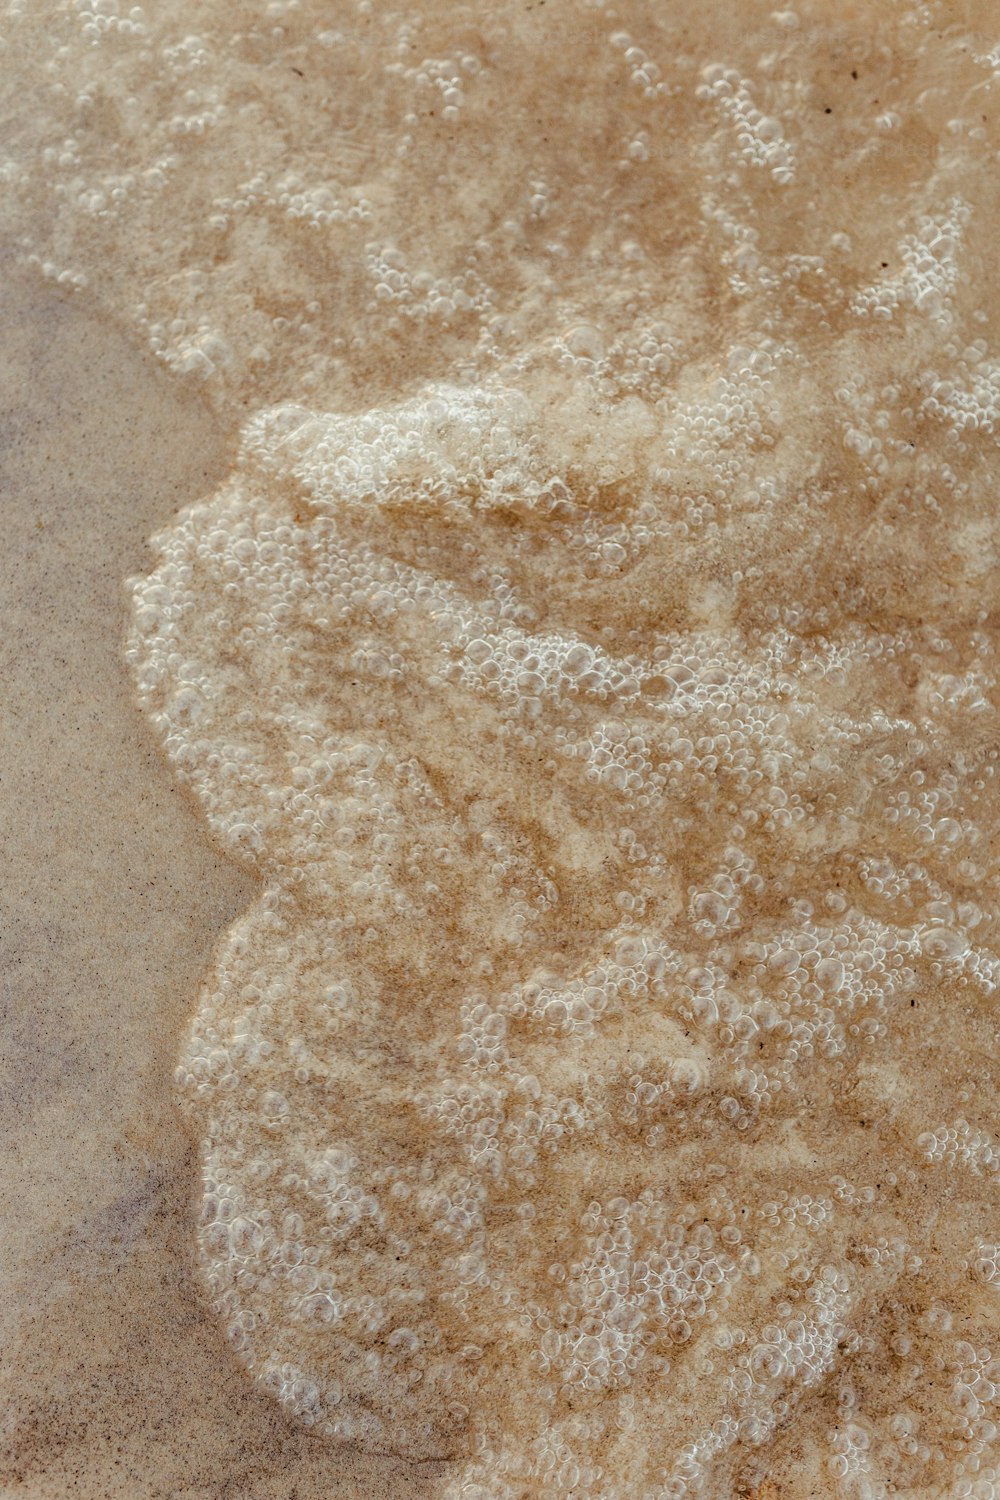 eine Nahaufnahme eines Sandhaufens auf dem Boden